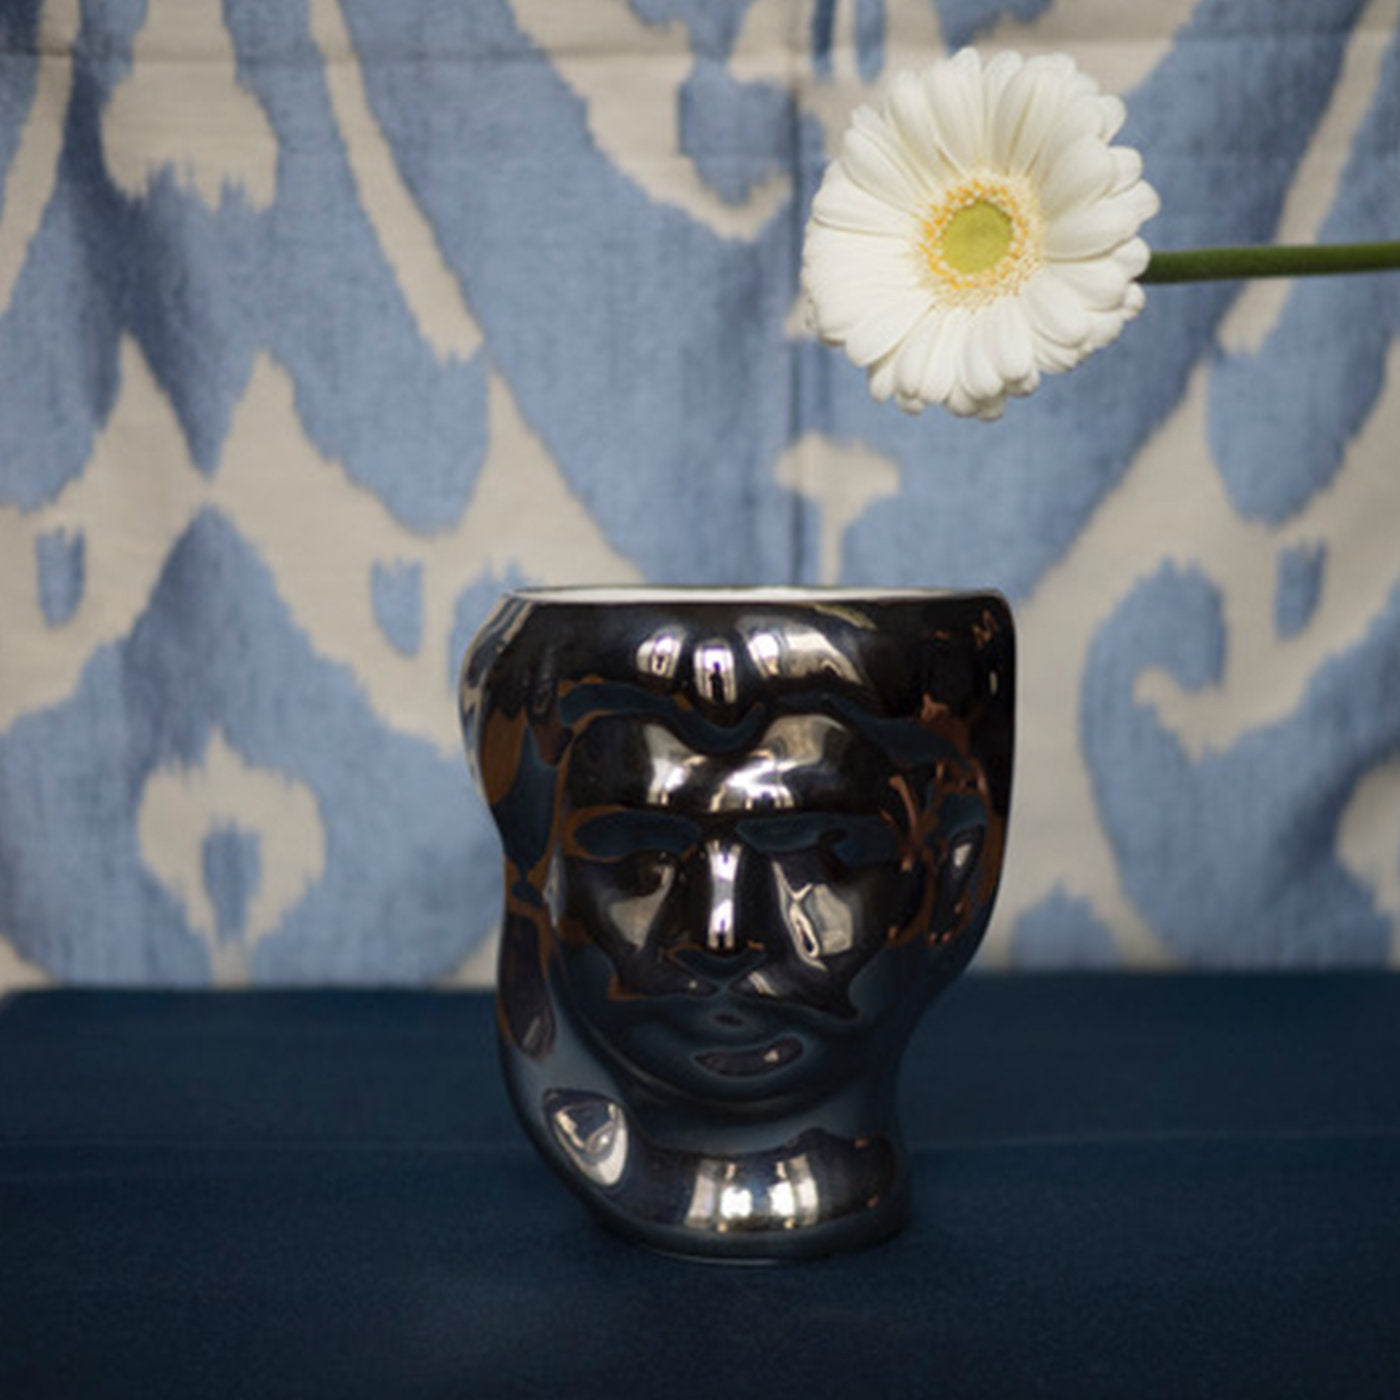 Silver Testa di Moro and White Malandrina Set of 2 Vases - Alternative view 1